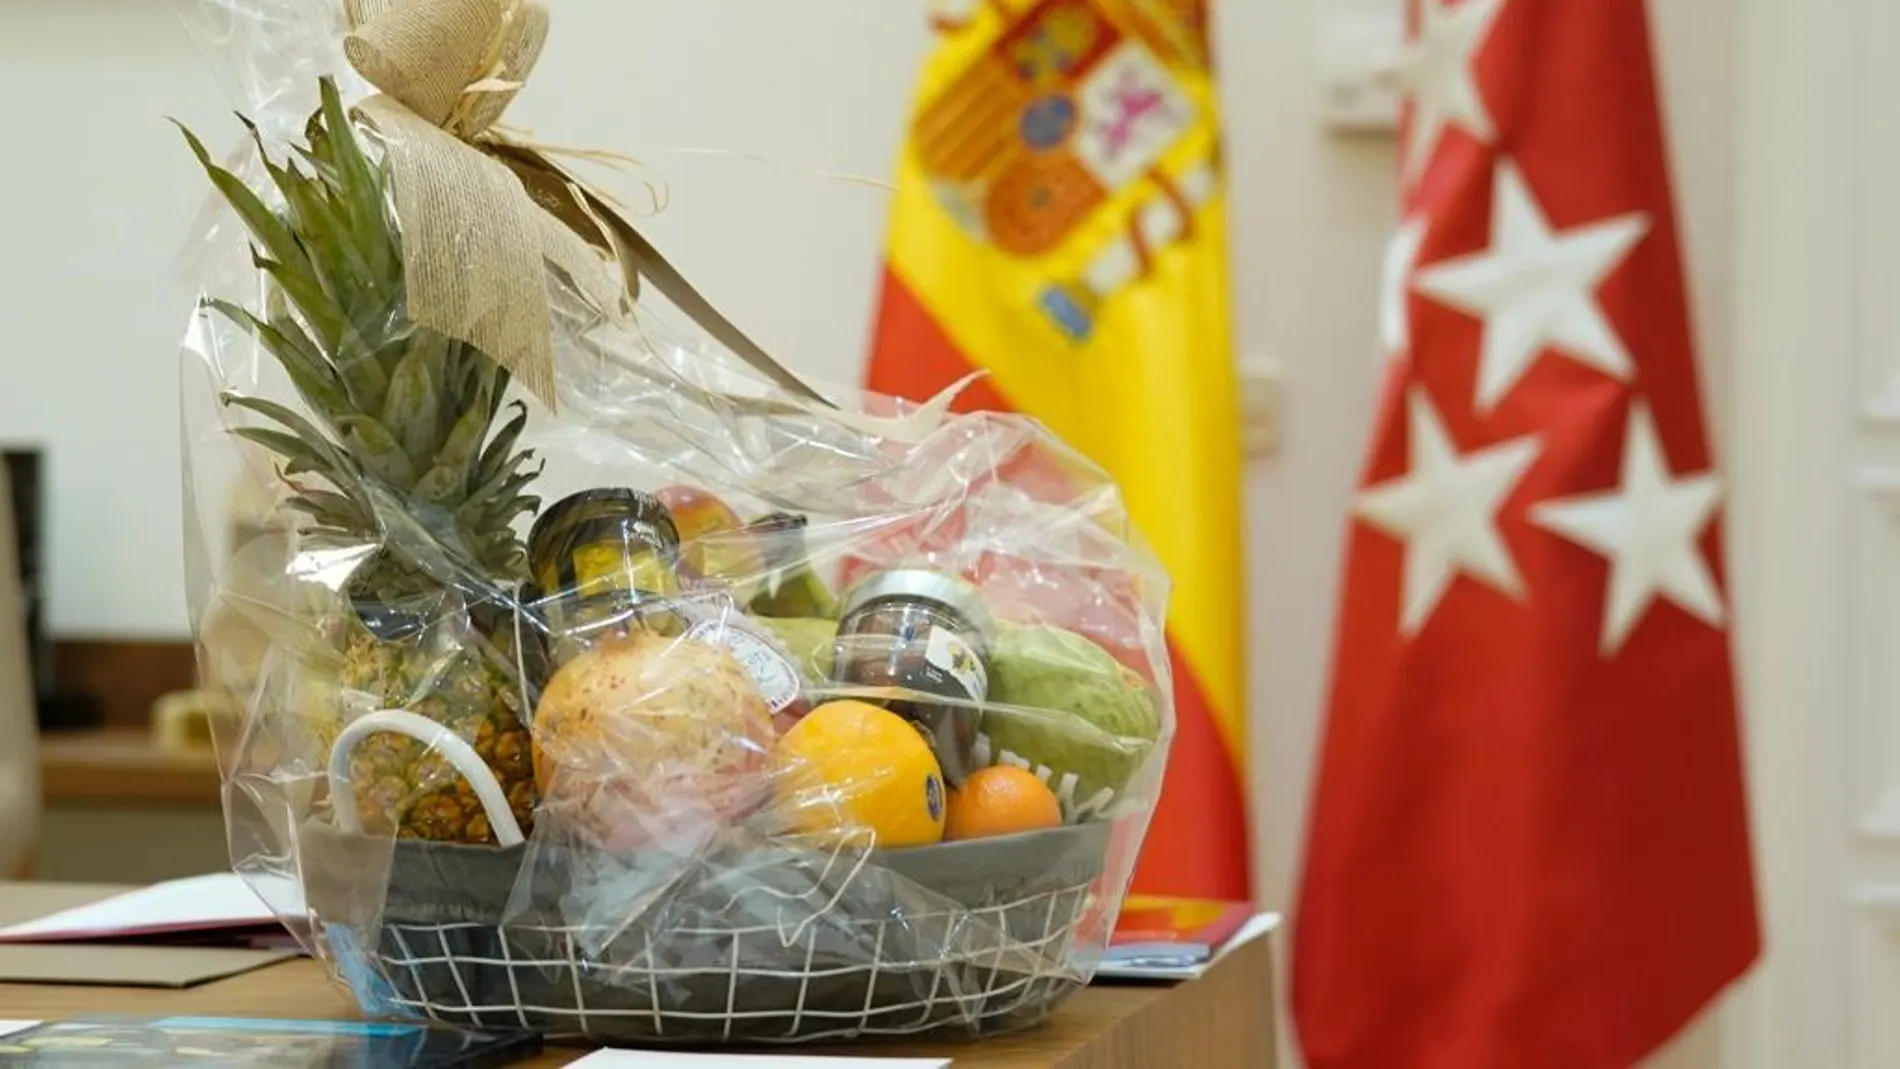 Ayuso recibe cestas de fruta a su nombre en la sede del Gobierno madrileño tras la polémica por llamar &quot;hijo de puta&quot; a Sánchez